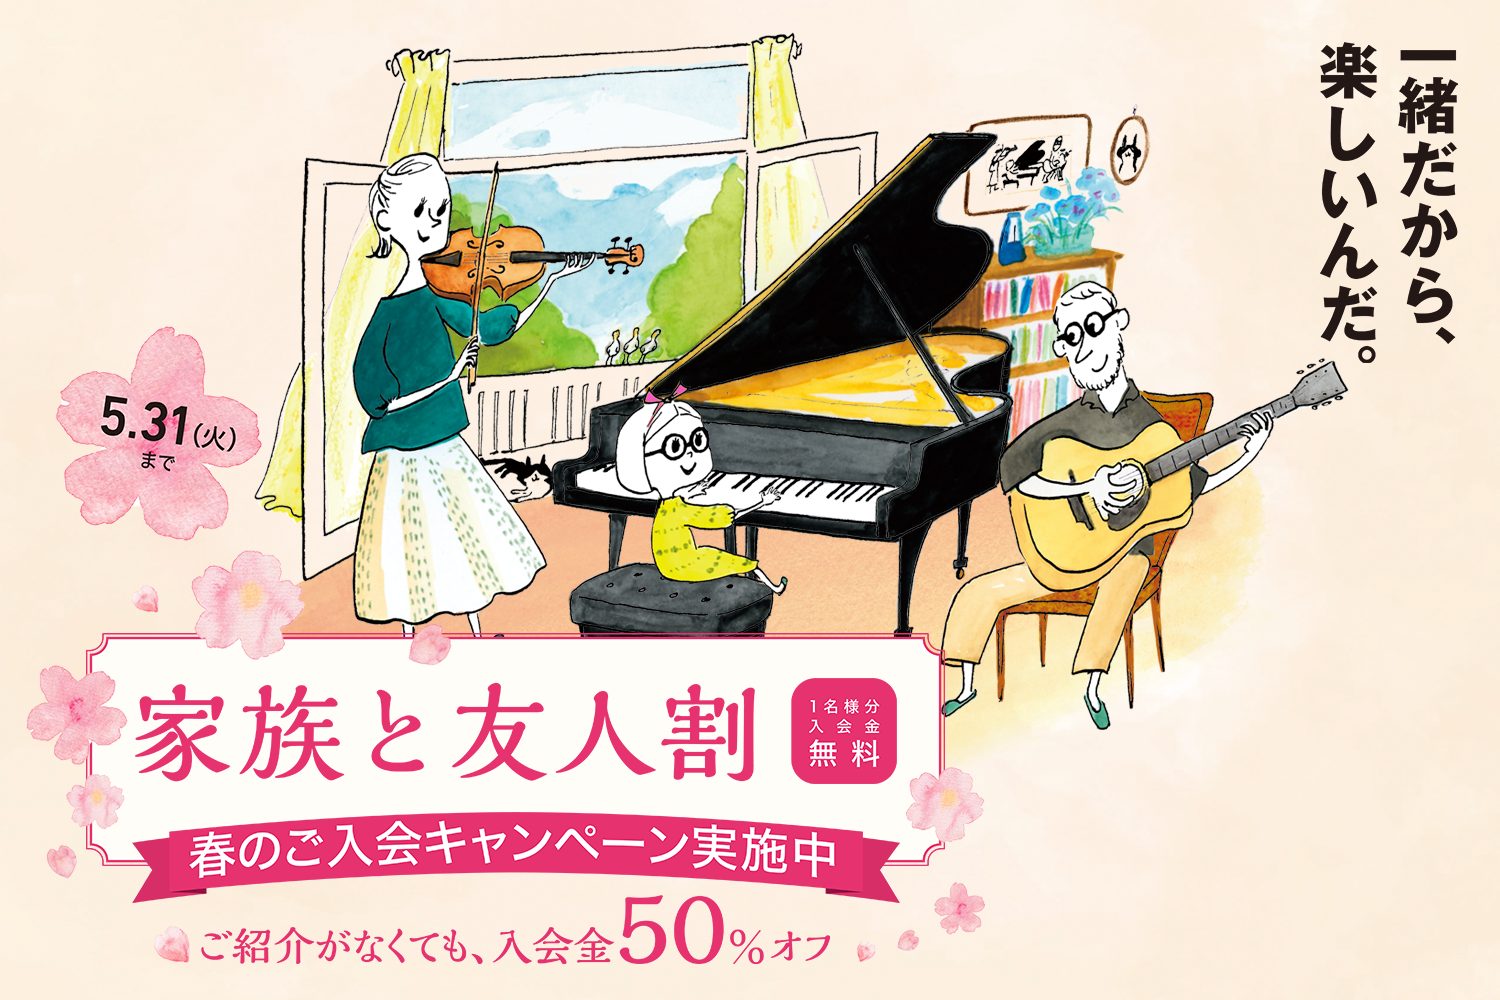 【音楽教室】入会金50%OFF!! 春のご入会キャンペーン